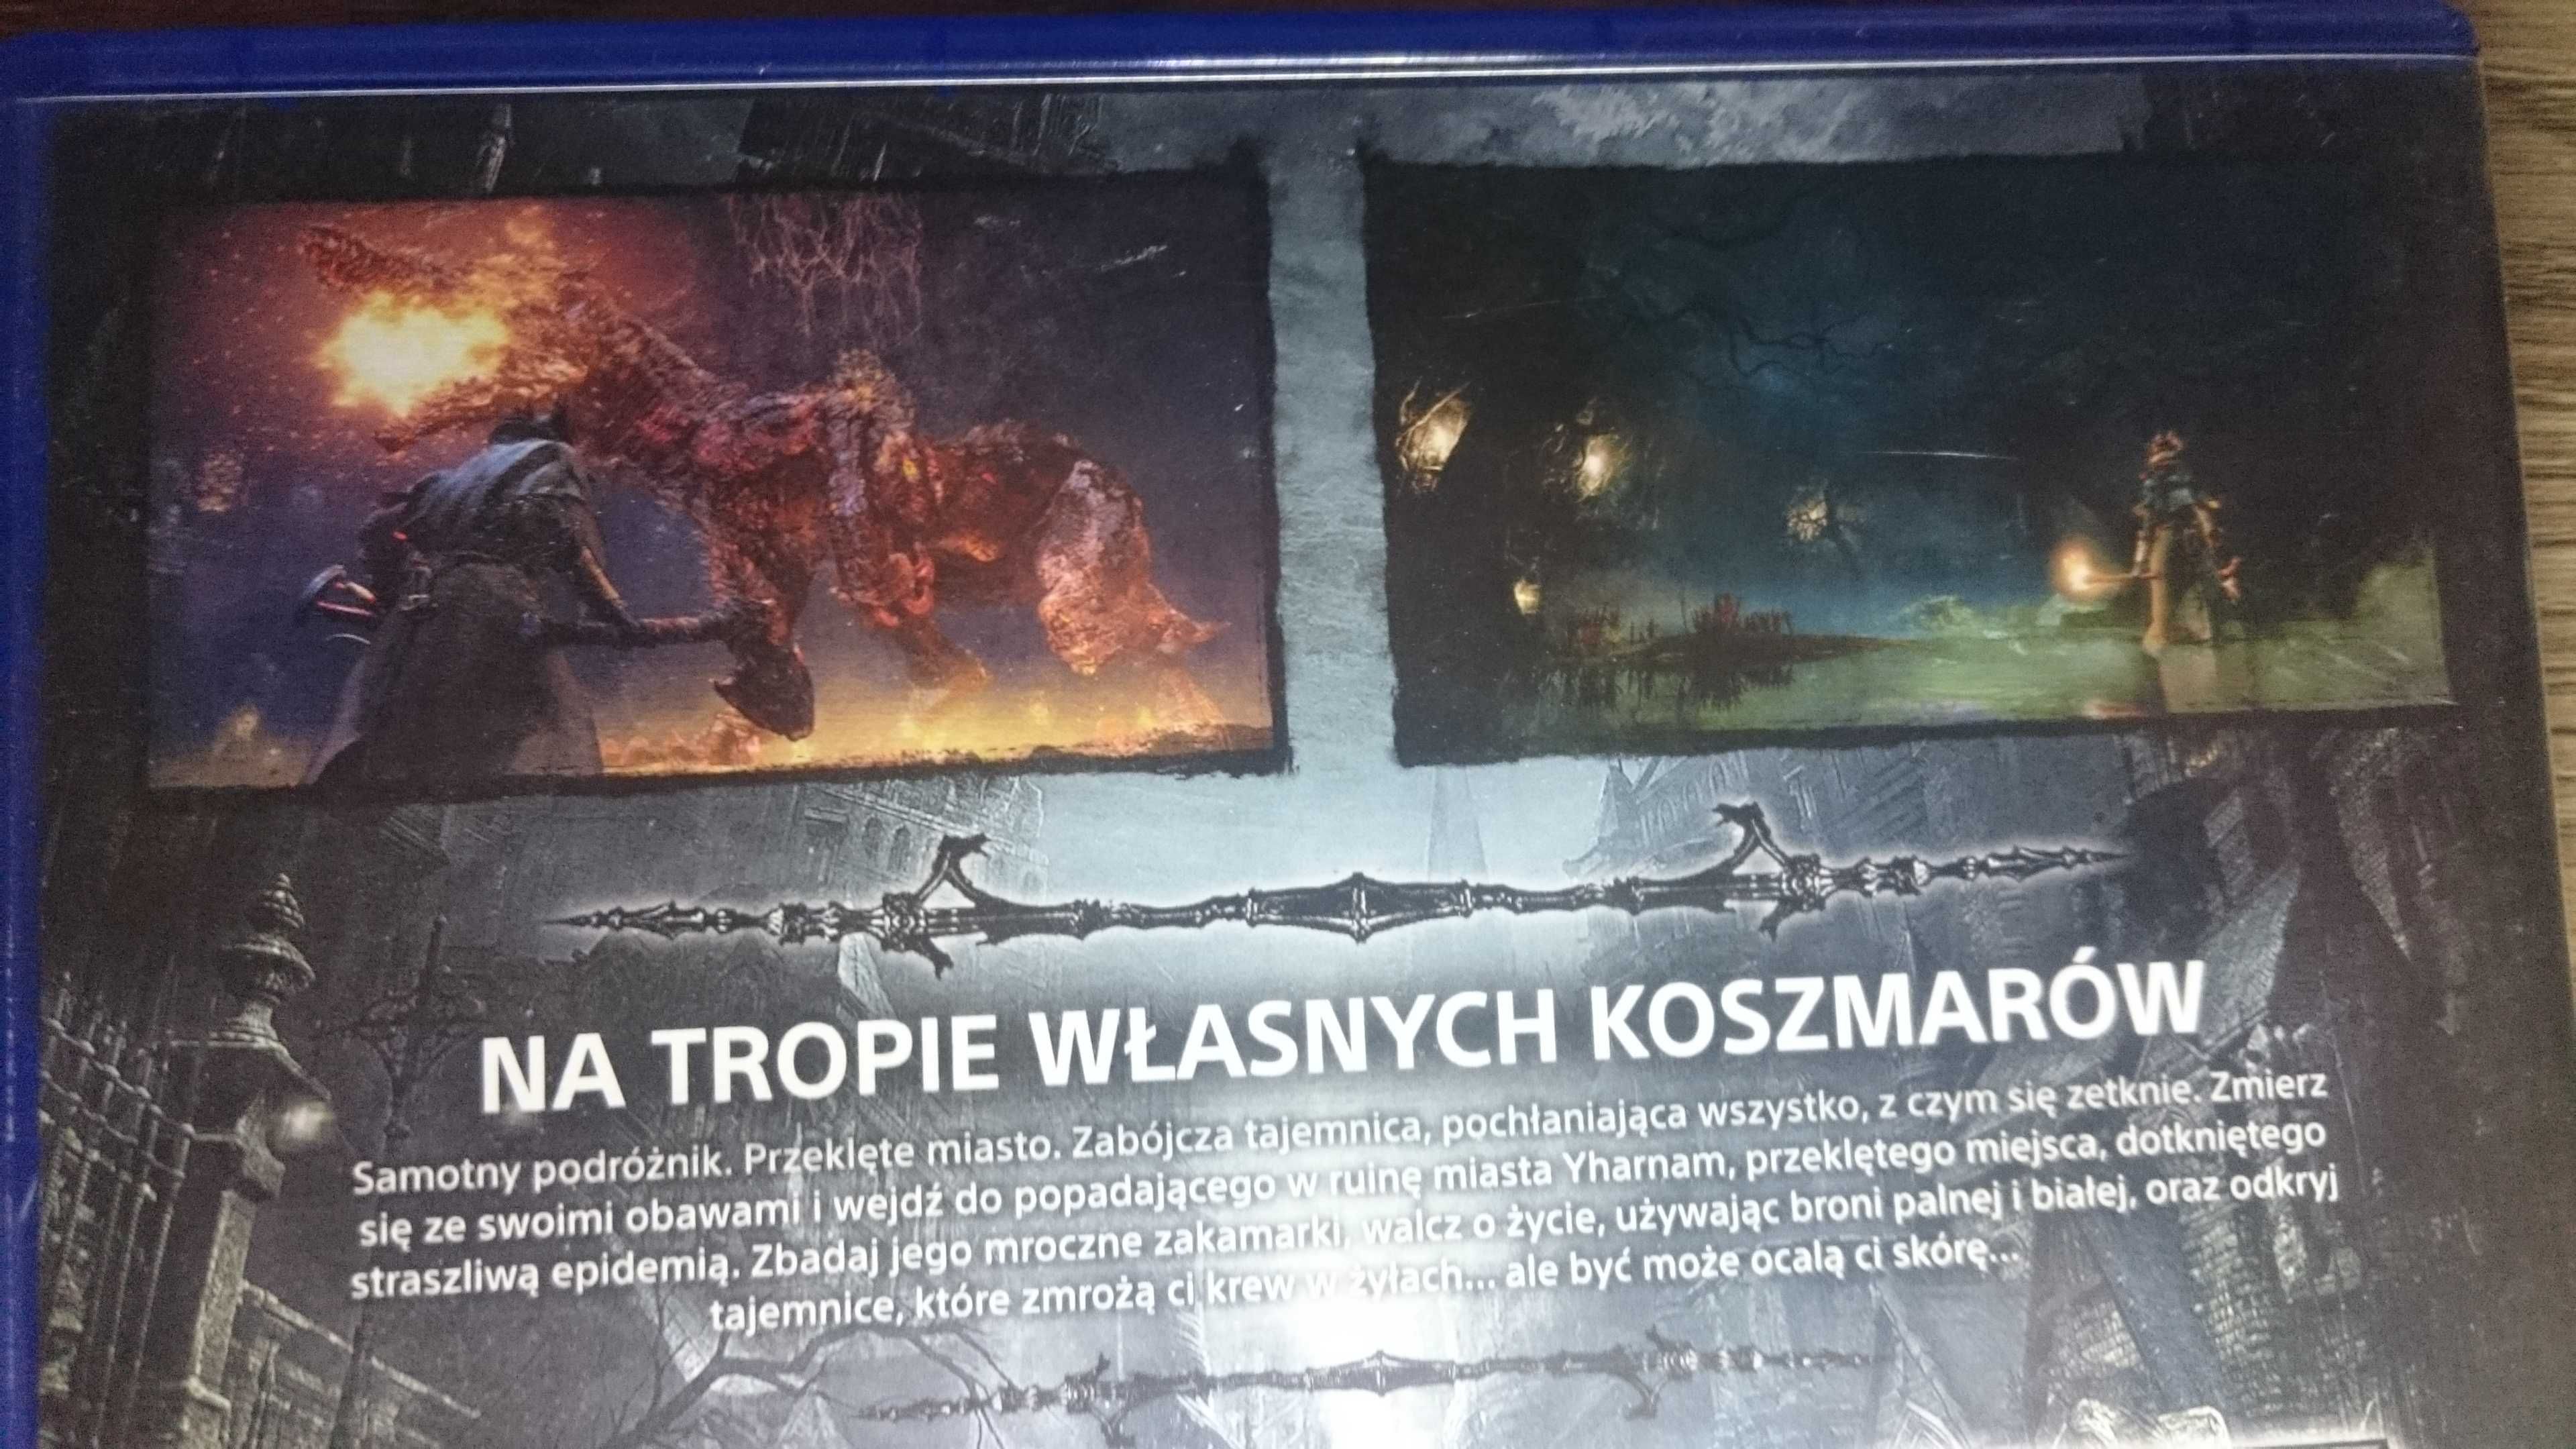 BLOODBORNE PS4 Playstation 4 Ideał polska  dark souls dying days gone